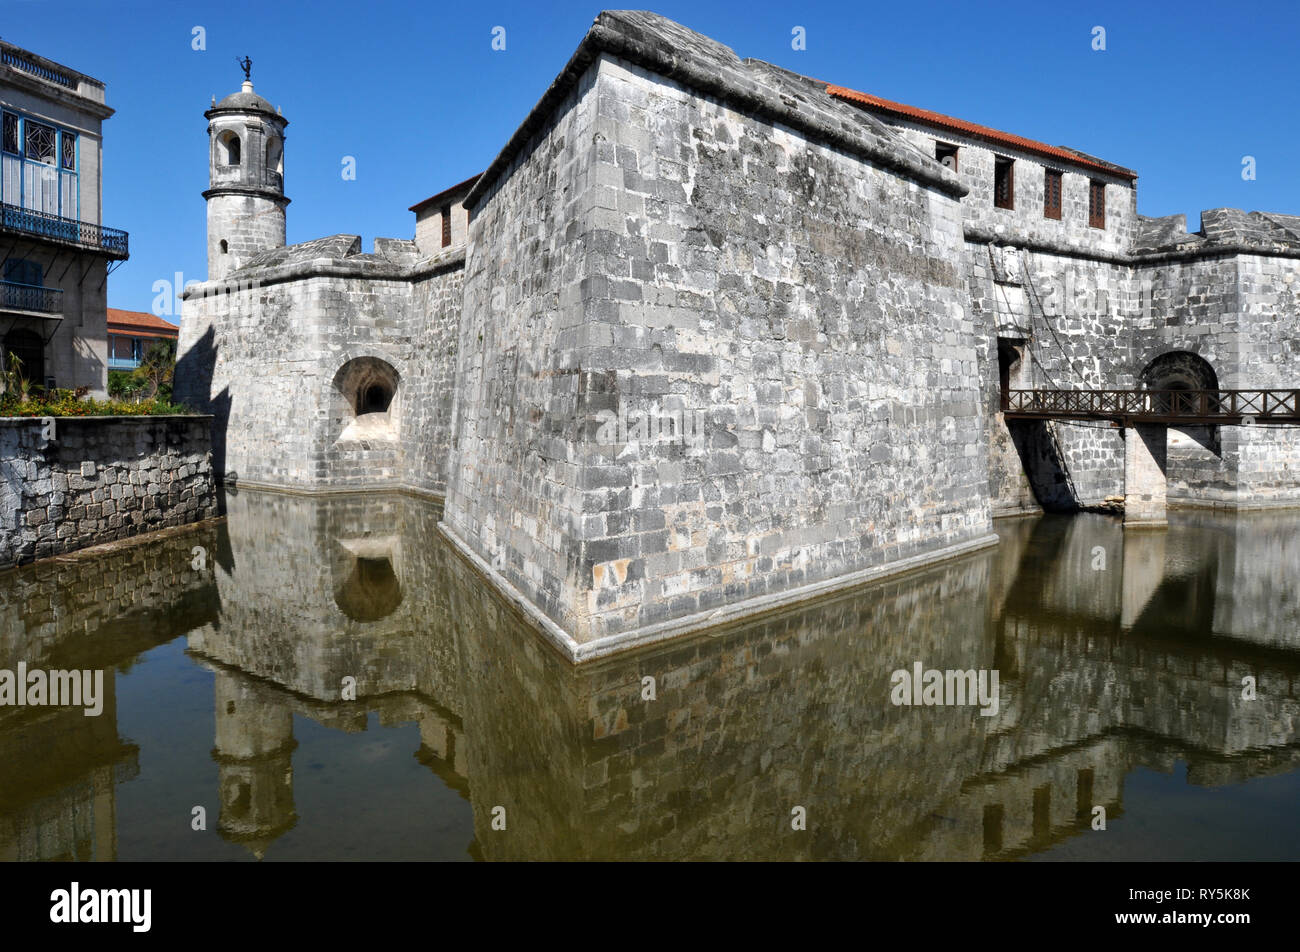 Achevé en 1577, le Castillo de la Real Fuerza à La Havane, Cuba est considérée comme la plus ancienne stone fort dans les Amériques. Il est maintenant un musée maritime. Banque D'Images